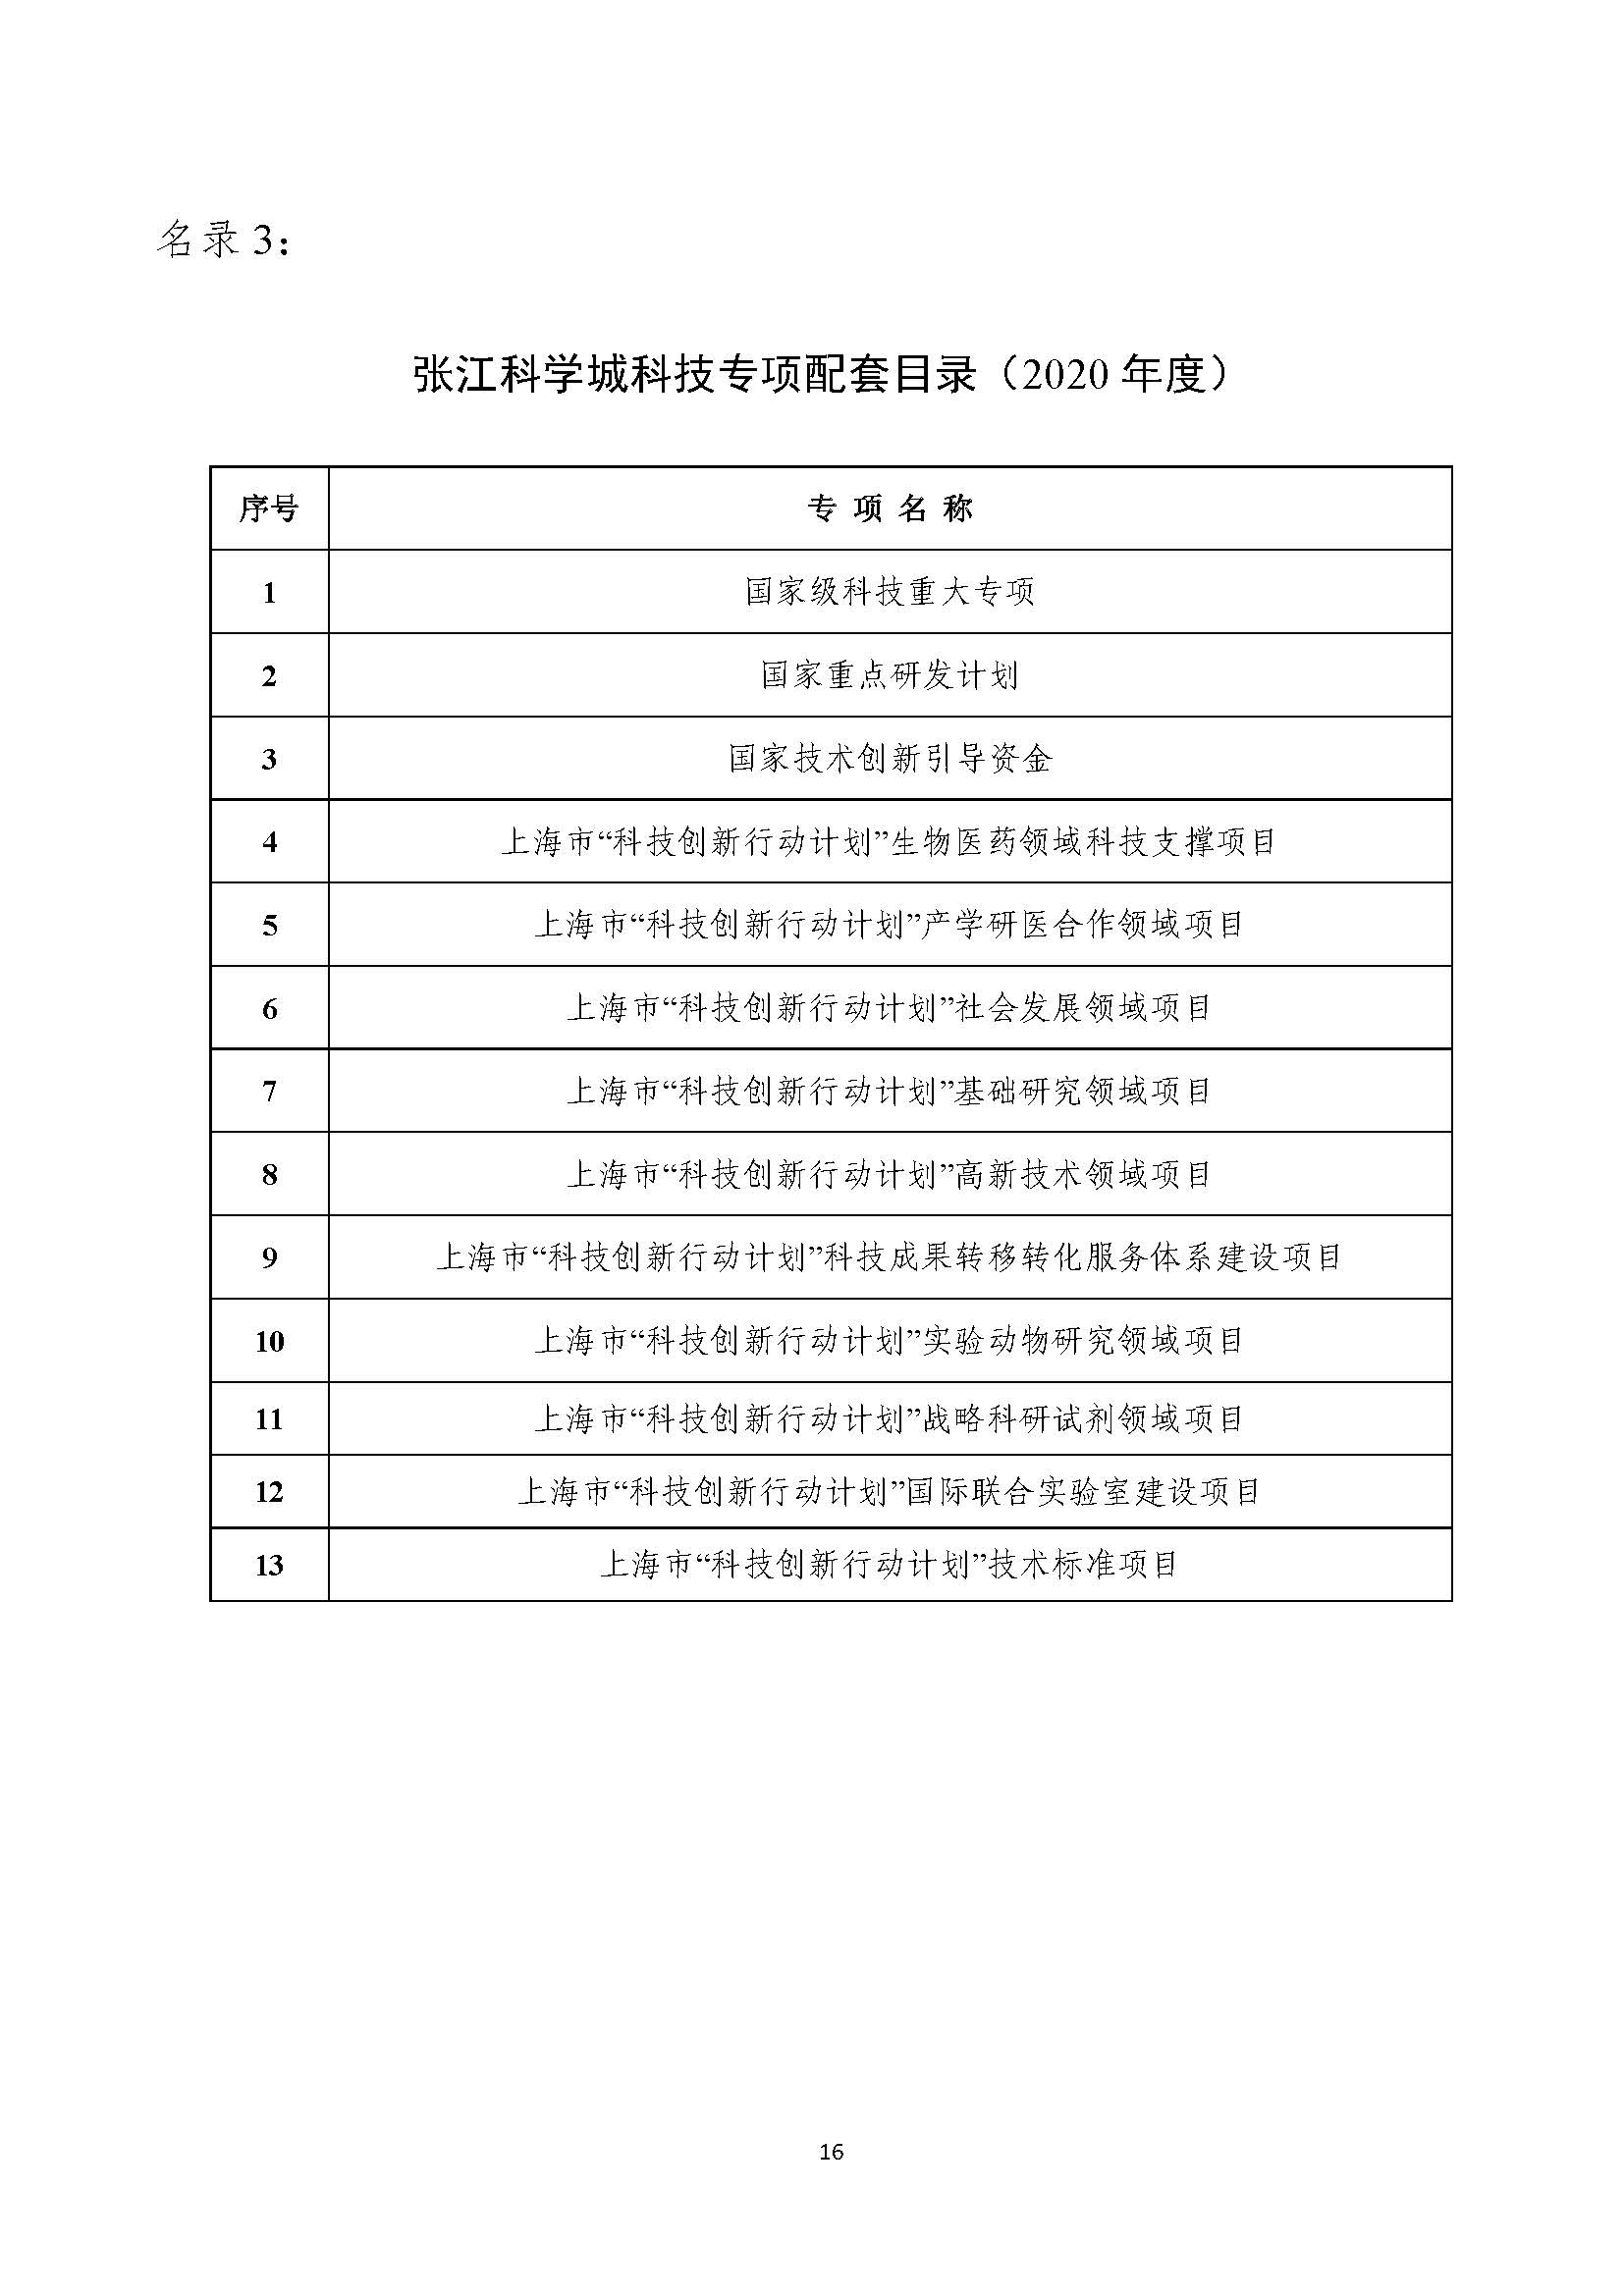 2021年张江科学城专项政策申报指南_页面_16.jpg